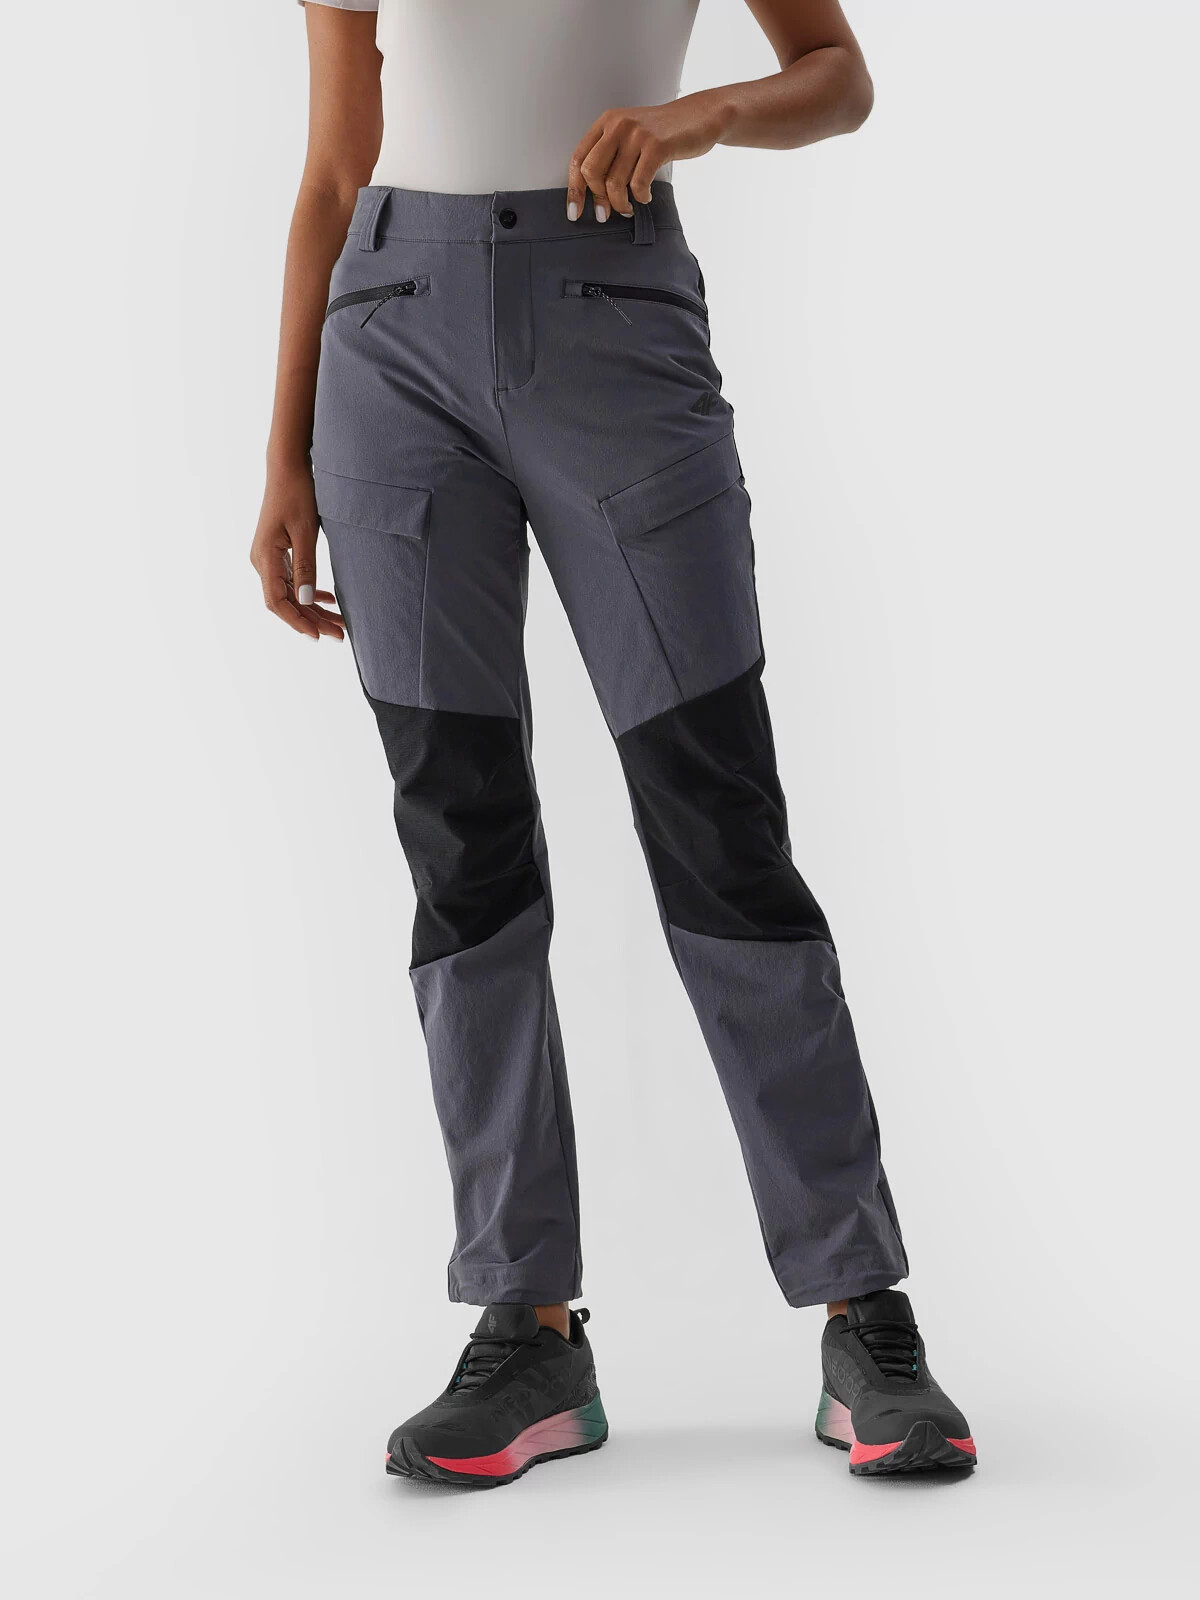 Dámské trekové kalhoty 4FAW23TFTRF407-22S tmavě šedé - 4F S